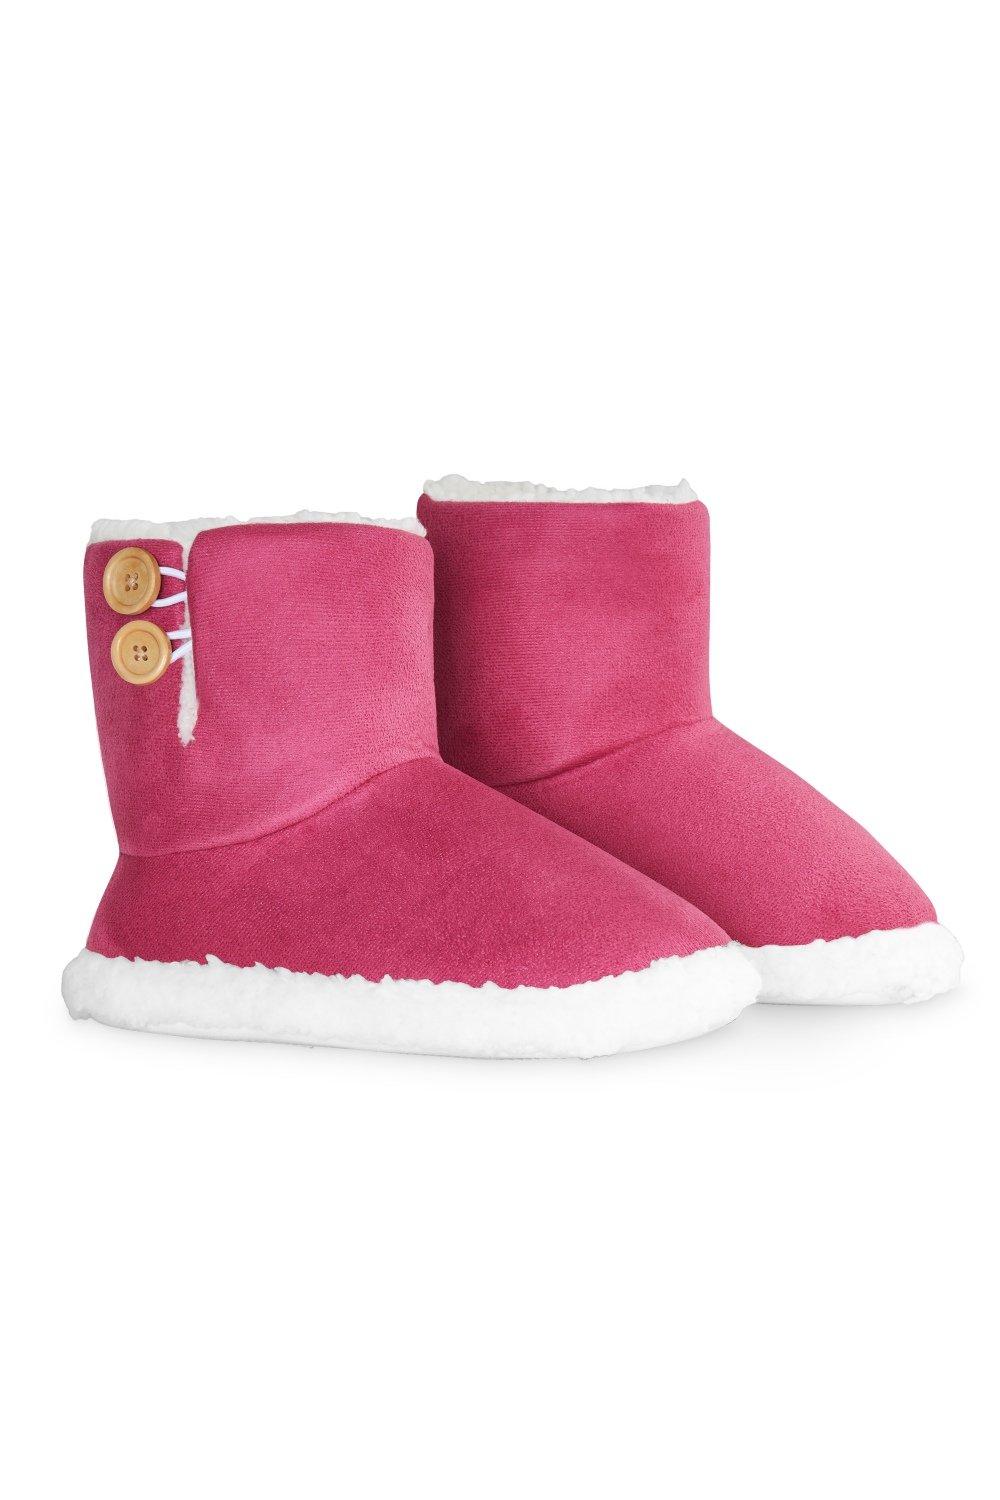 Тапочки на пуговицах Dunlop, розовый женские ботинки обувь для женщин ботильоны без шнуровки теплые женские зимние ботинки плюшевая обувь для зимы женские ботинки